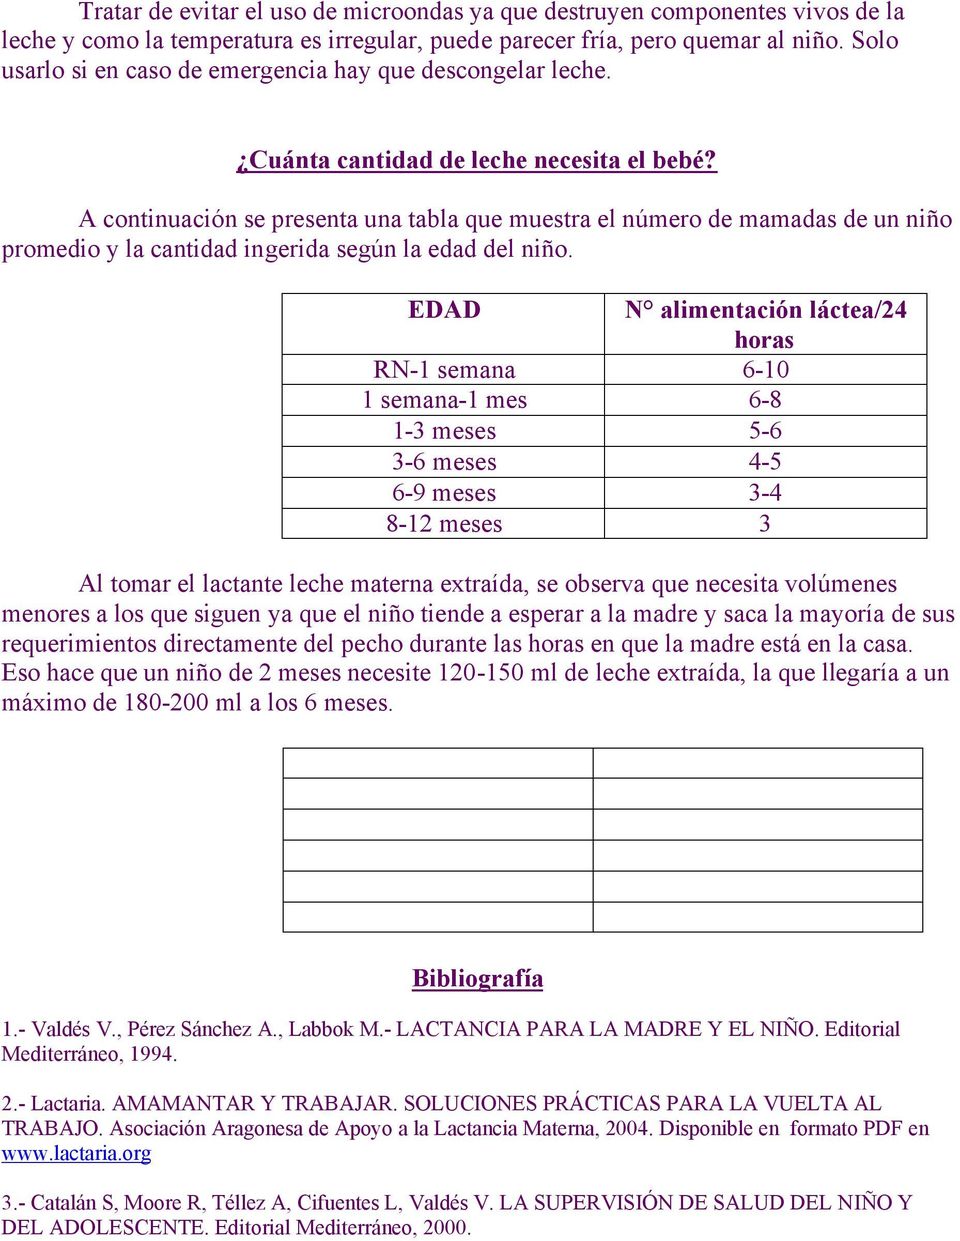 A continuación se presenta una tabla que muestra el número de mamadas de un niño promedio y la cantidad ingerida según la edad del niño.